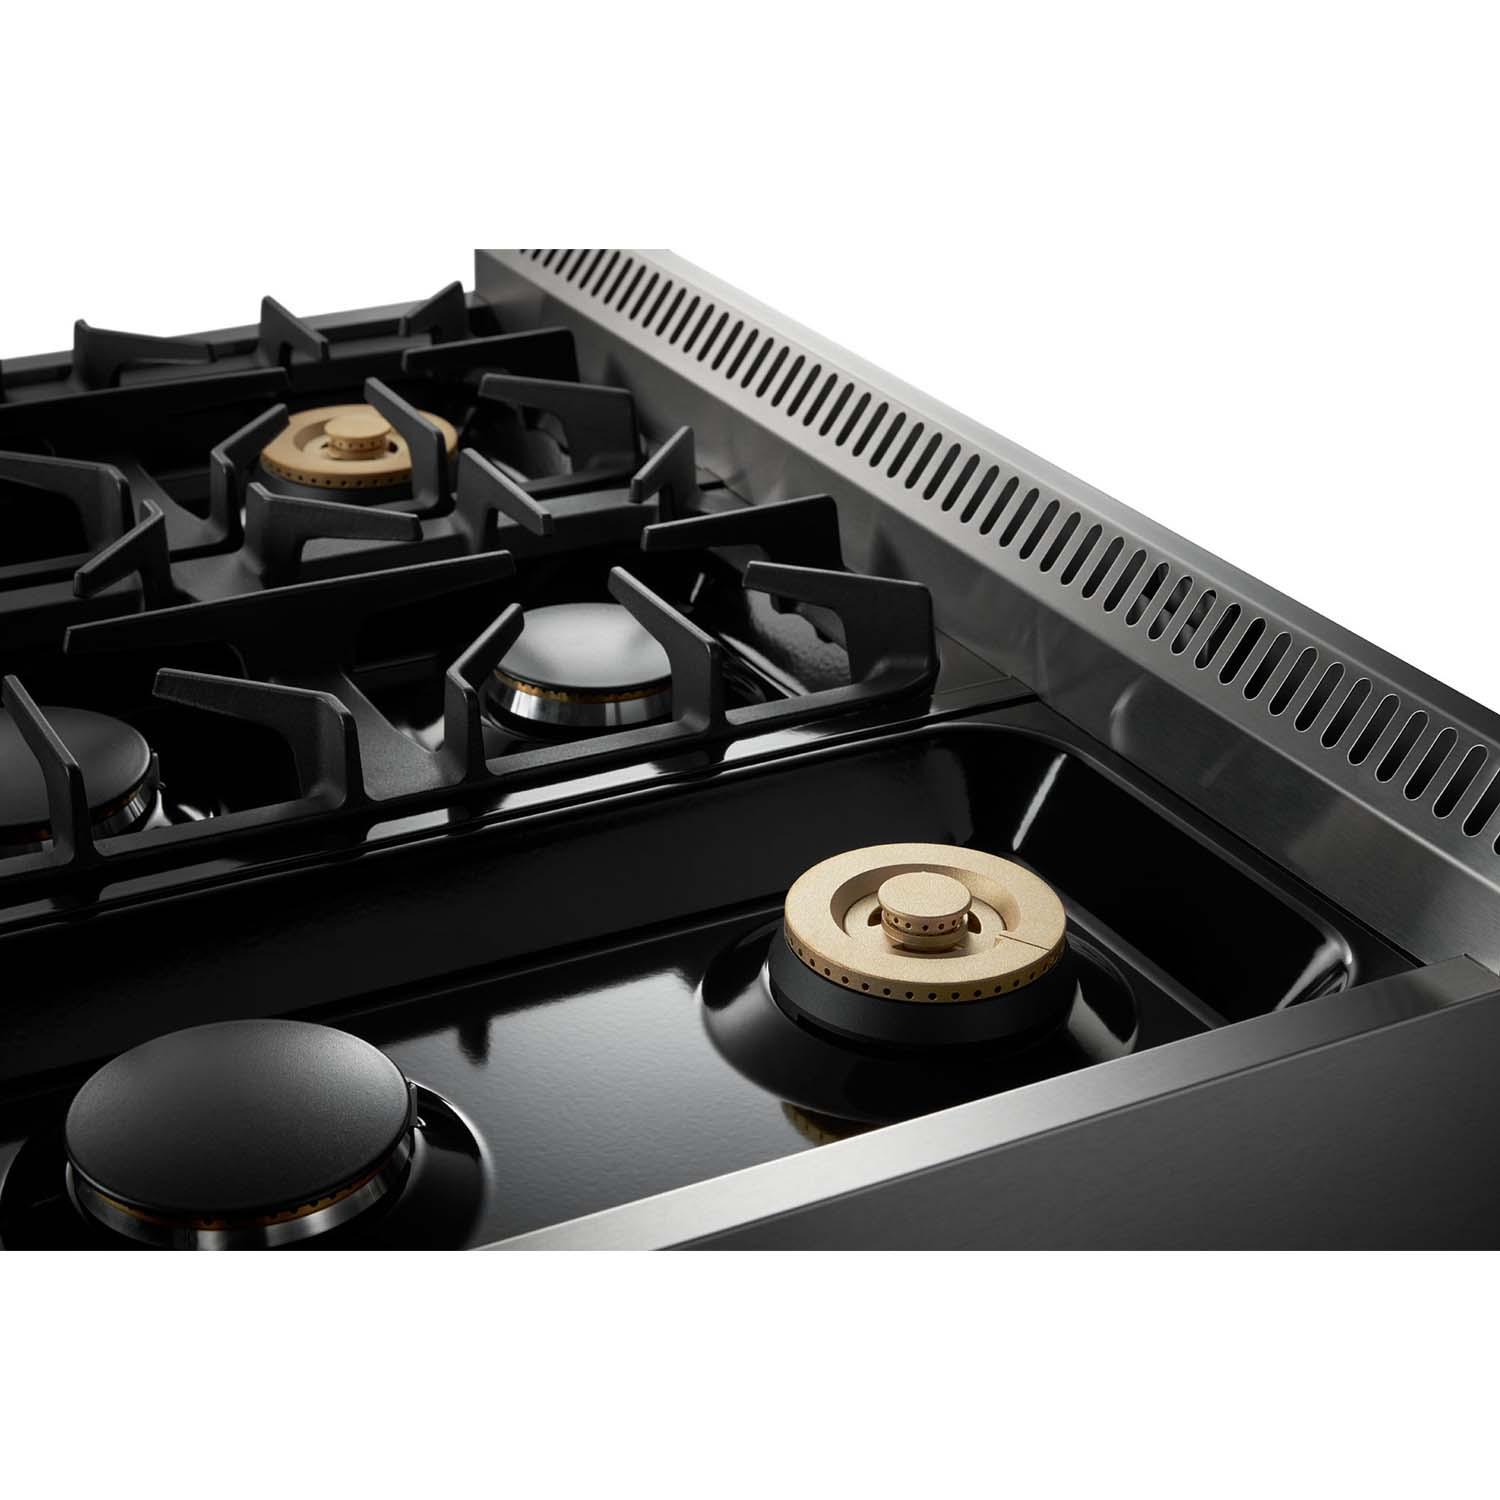 Thor Kitchen 36-inch Professional Dual Fuel Range - Hrd3606u / Hrd3606ulp